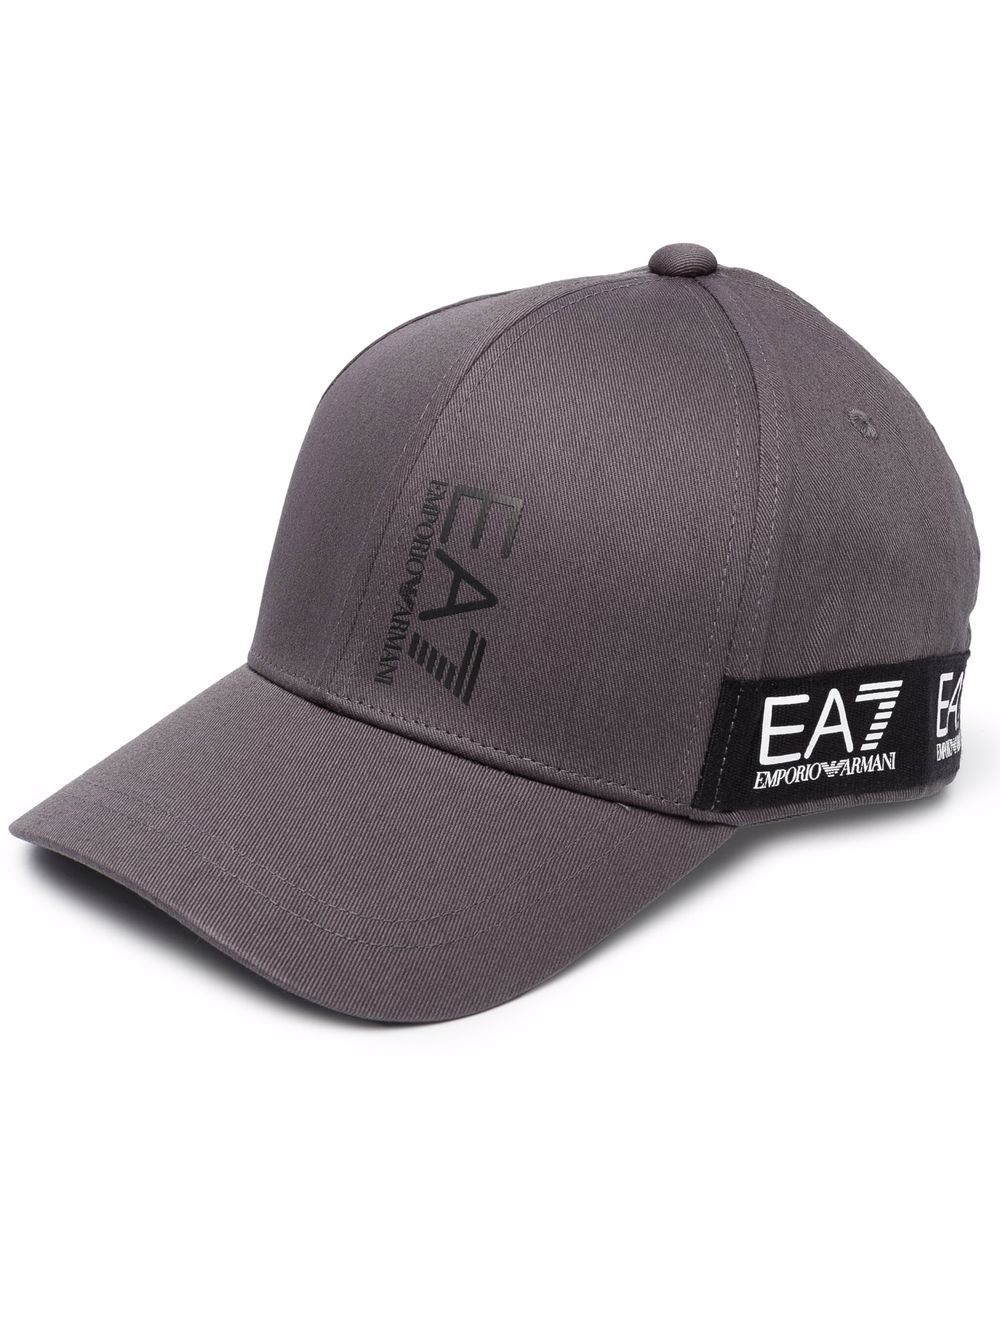 фото Ea7 emporio armani кепка с логотипом